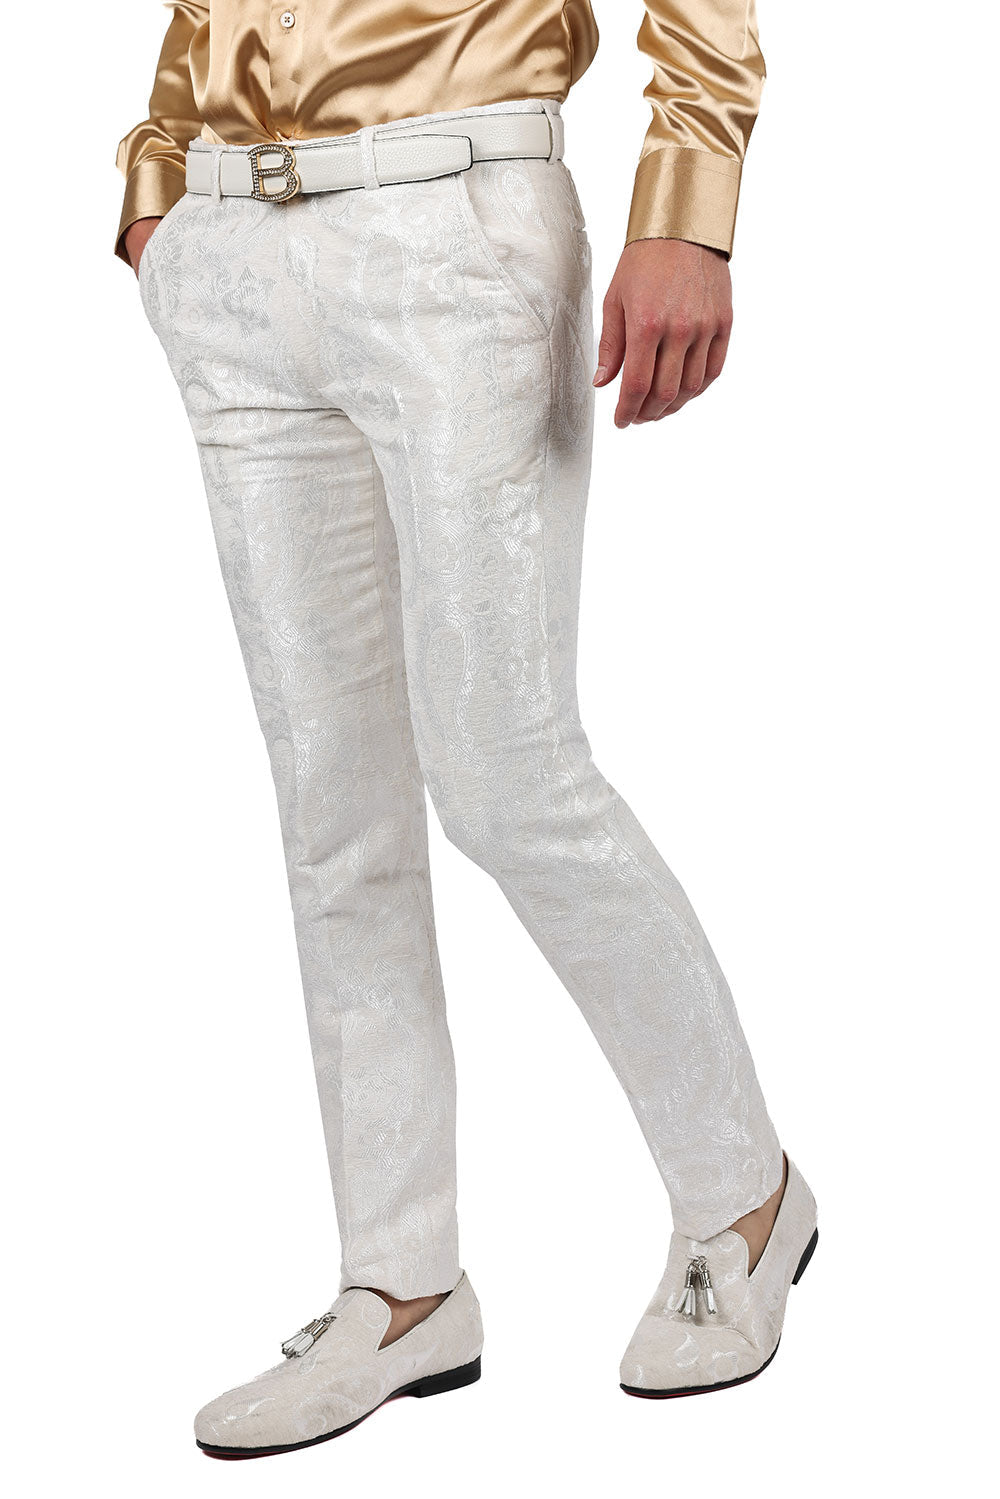 Barabas Men's Paisley Floral Print Design Luxury Pants 2CP3101 White